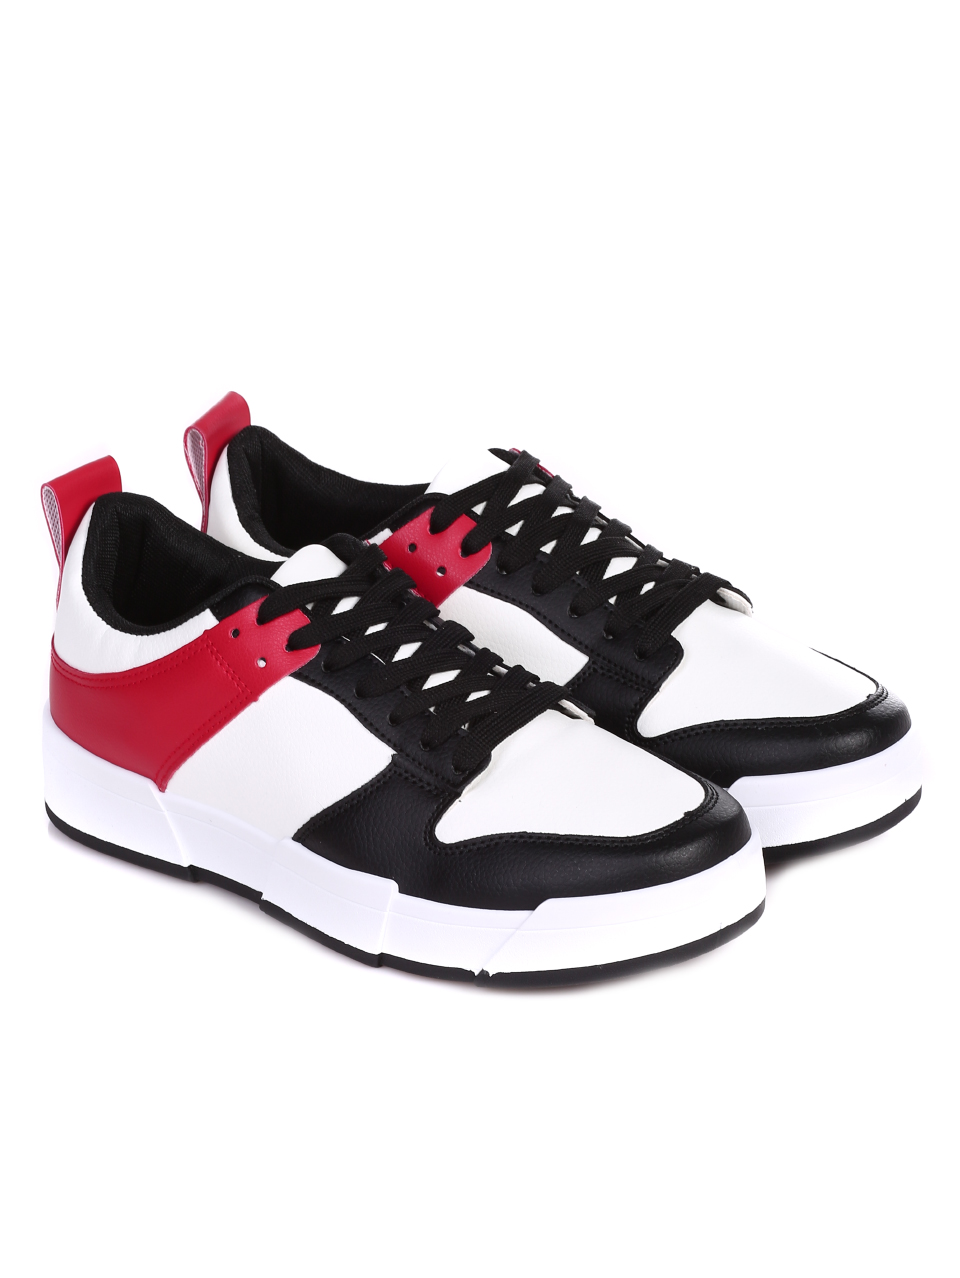 Ежедневни мъжки обувки в черно и червено 7U-22020 black/red